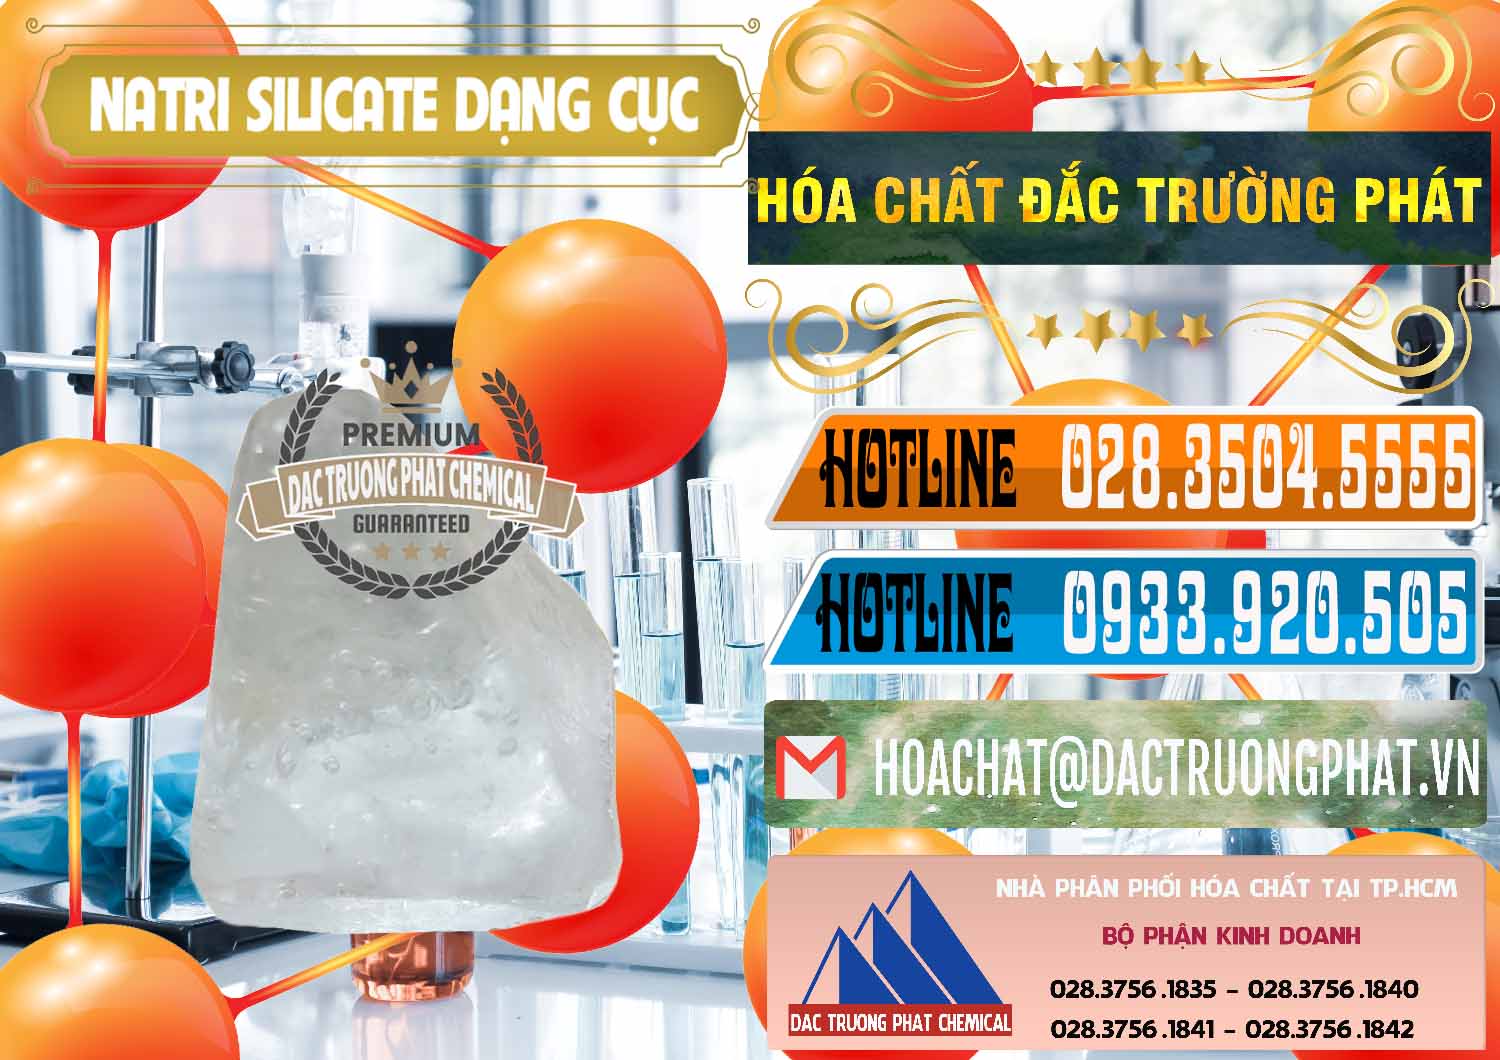 Nơi bán ( cung ứng ) Natri Silicate - Na2SiO3 - Keo Silicate Dạng Cục Ấn Độ India - 0382 - Đơn vị cung cấp & kinh doanh hóa chất tại TP.HCM - stmp.net